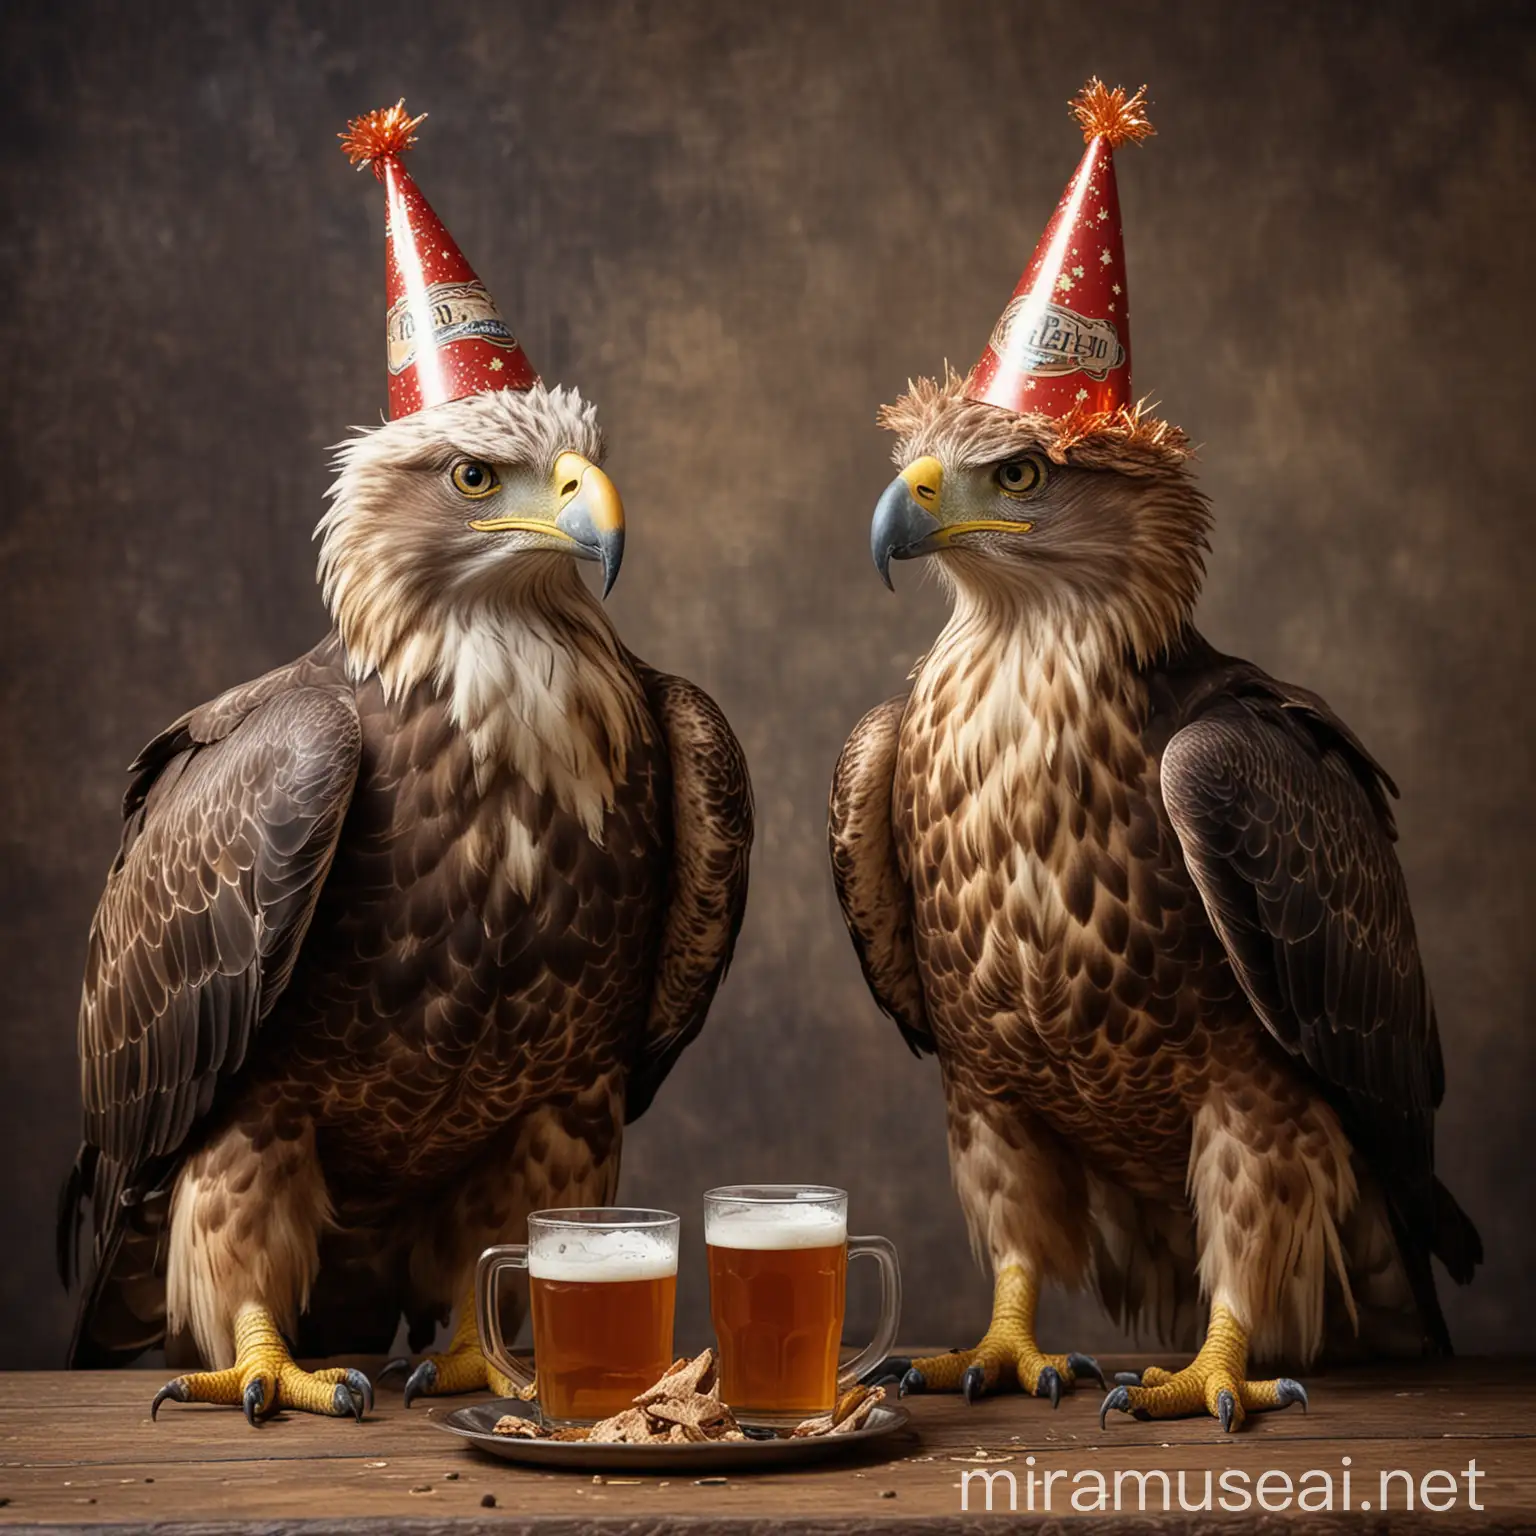 День рождения старого орла и зрелого ястреба в праздничных колпаках и с пивом